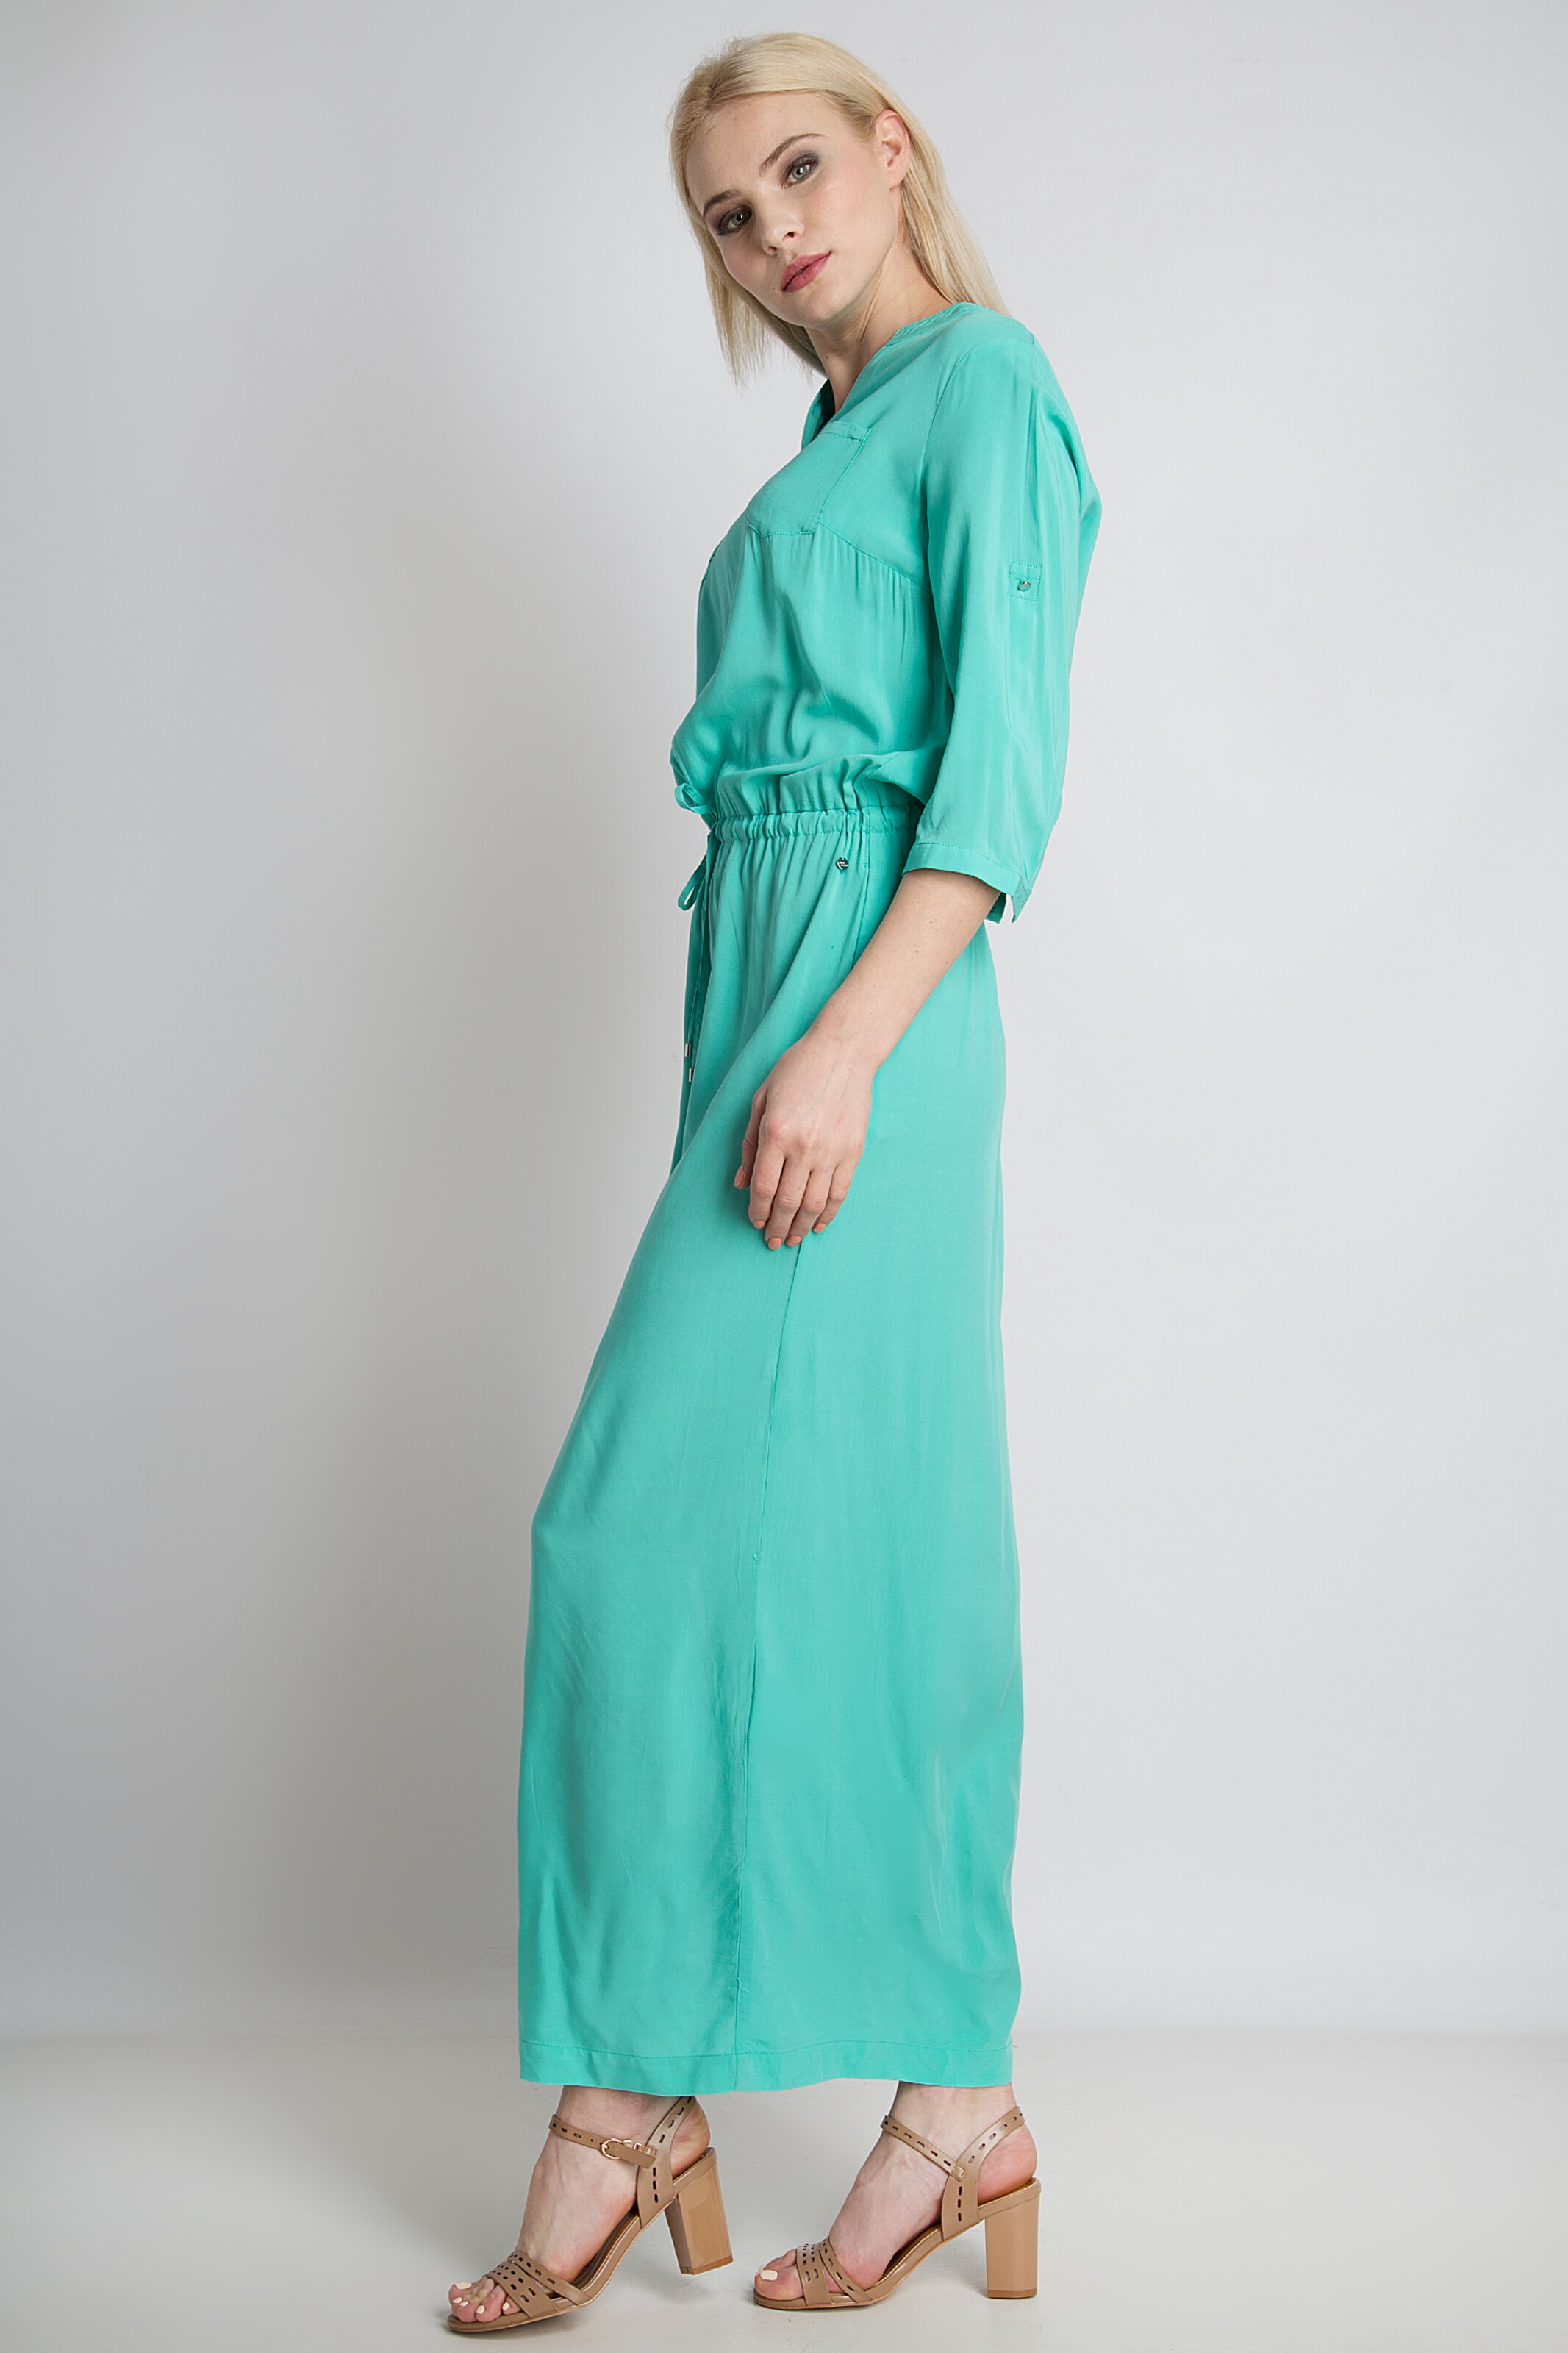 Frauen Große Größen Finn Flare Maxi-Kleid mit Taillenschnürung in Aqua - YU20758